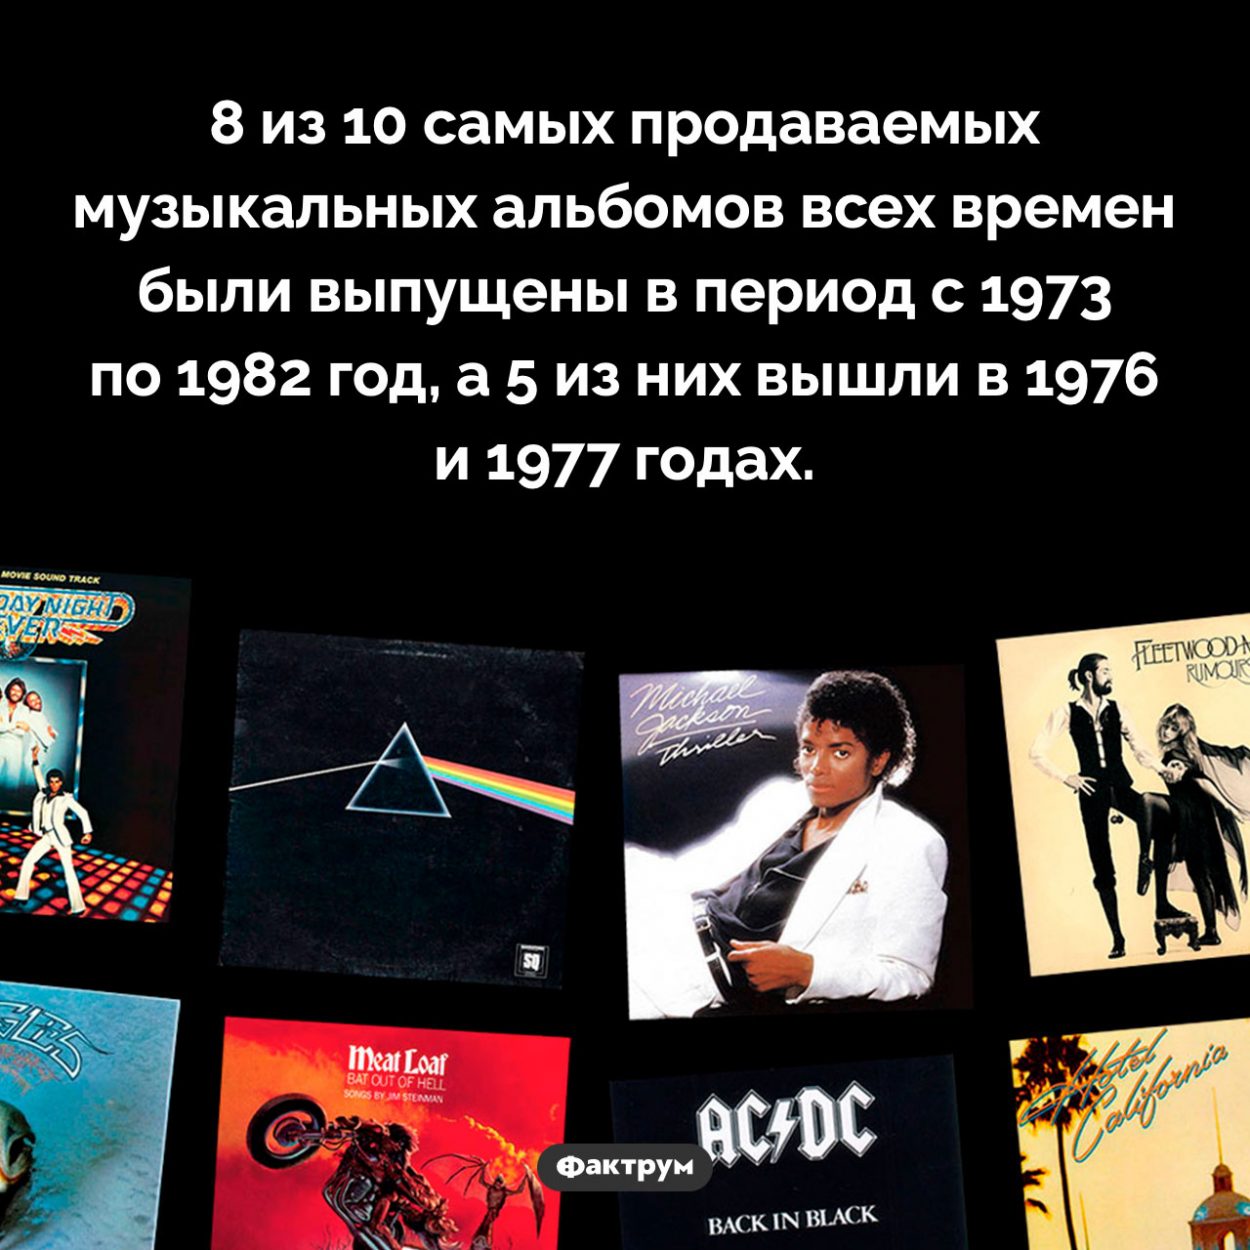 Самое музыкальное десятилетие. 8 из 10 самых продаваемых музыкальных альбомов всех времен были выпущены в период с 1973 по 1982 год, а 5 из них вышли в 1976 и 1977 годах.